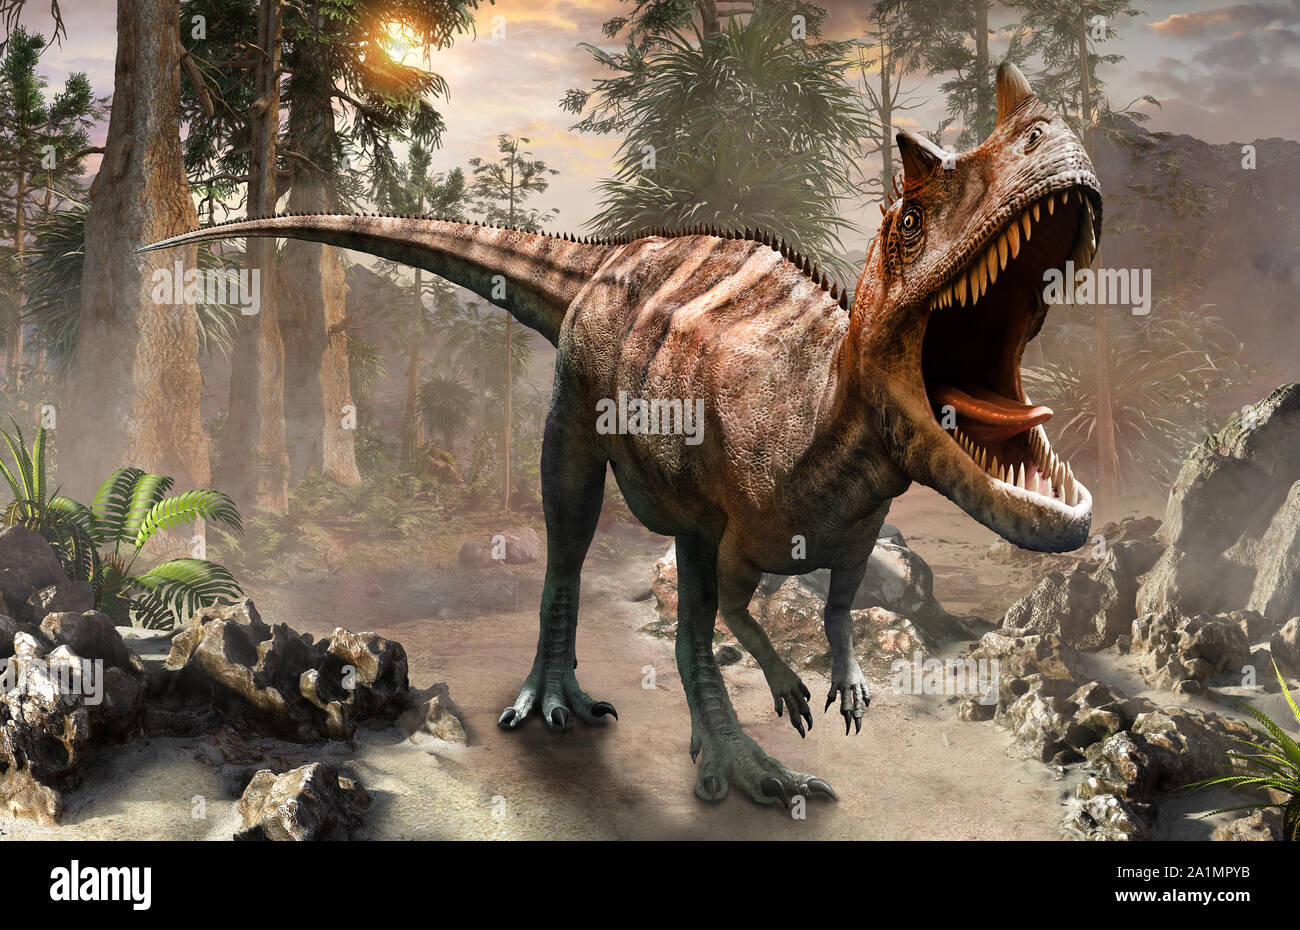 Ceratosaurus dinosaur scene 3D illustration Stock Photo